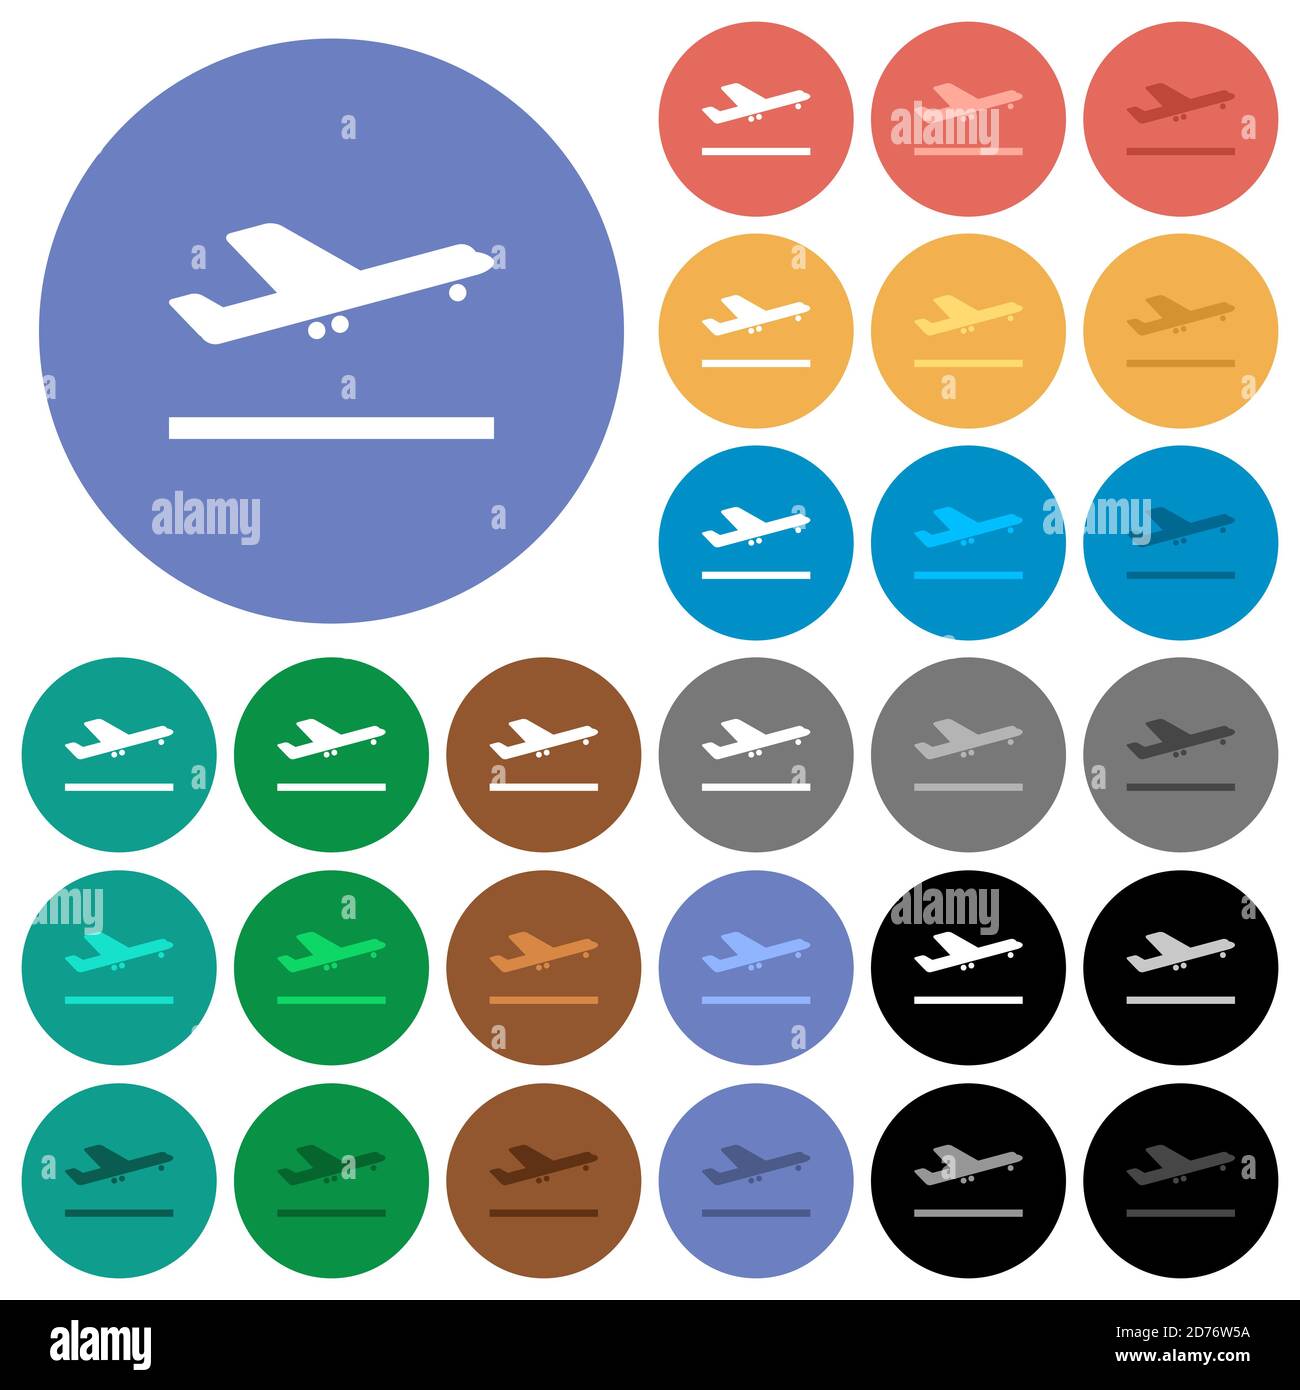 Flugzeug abheben mehrfarbige flache Symbole auf runden Hintergründen. Im Lieferumfang enthalten sind weiße, helle und dunkle Symbolvarianten für Schwebeeffekt und aktive Statuseffekte, ein Stock Vektor